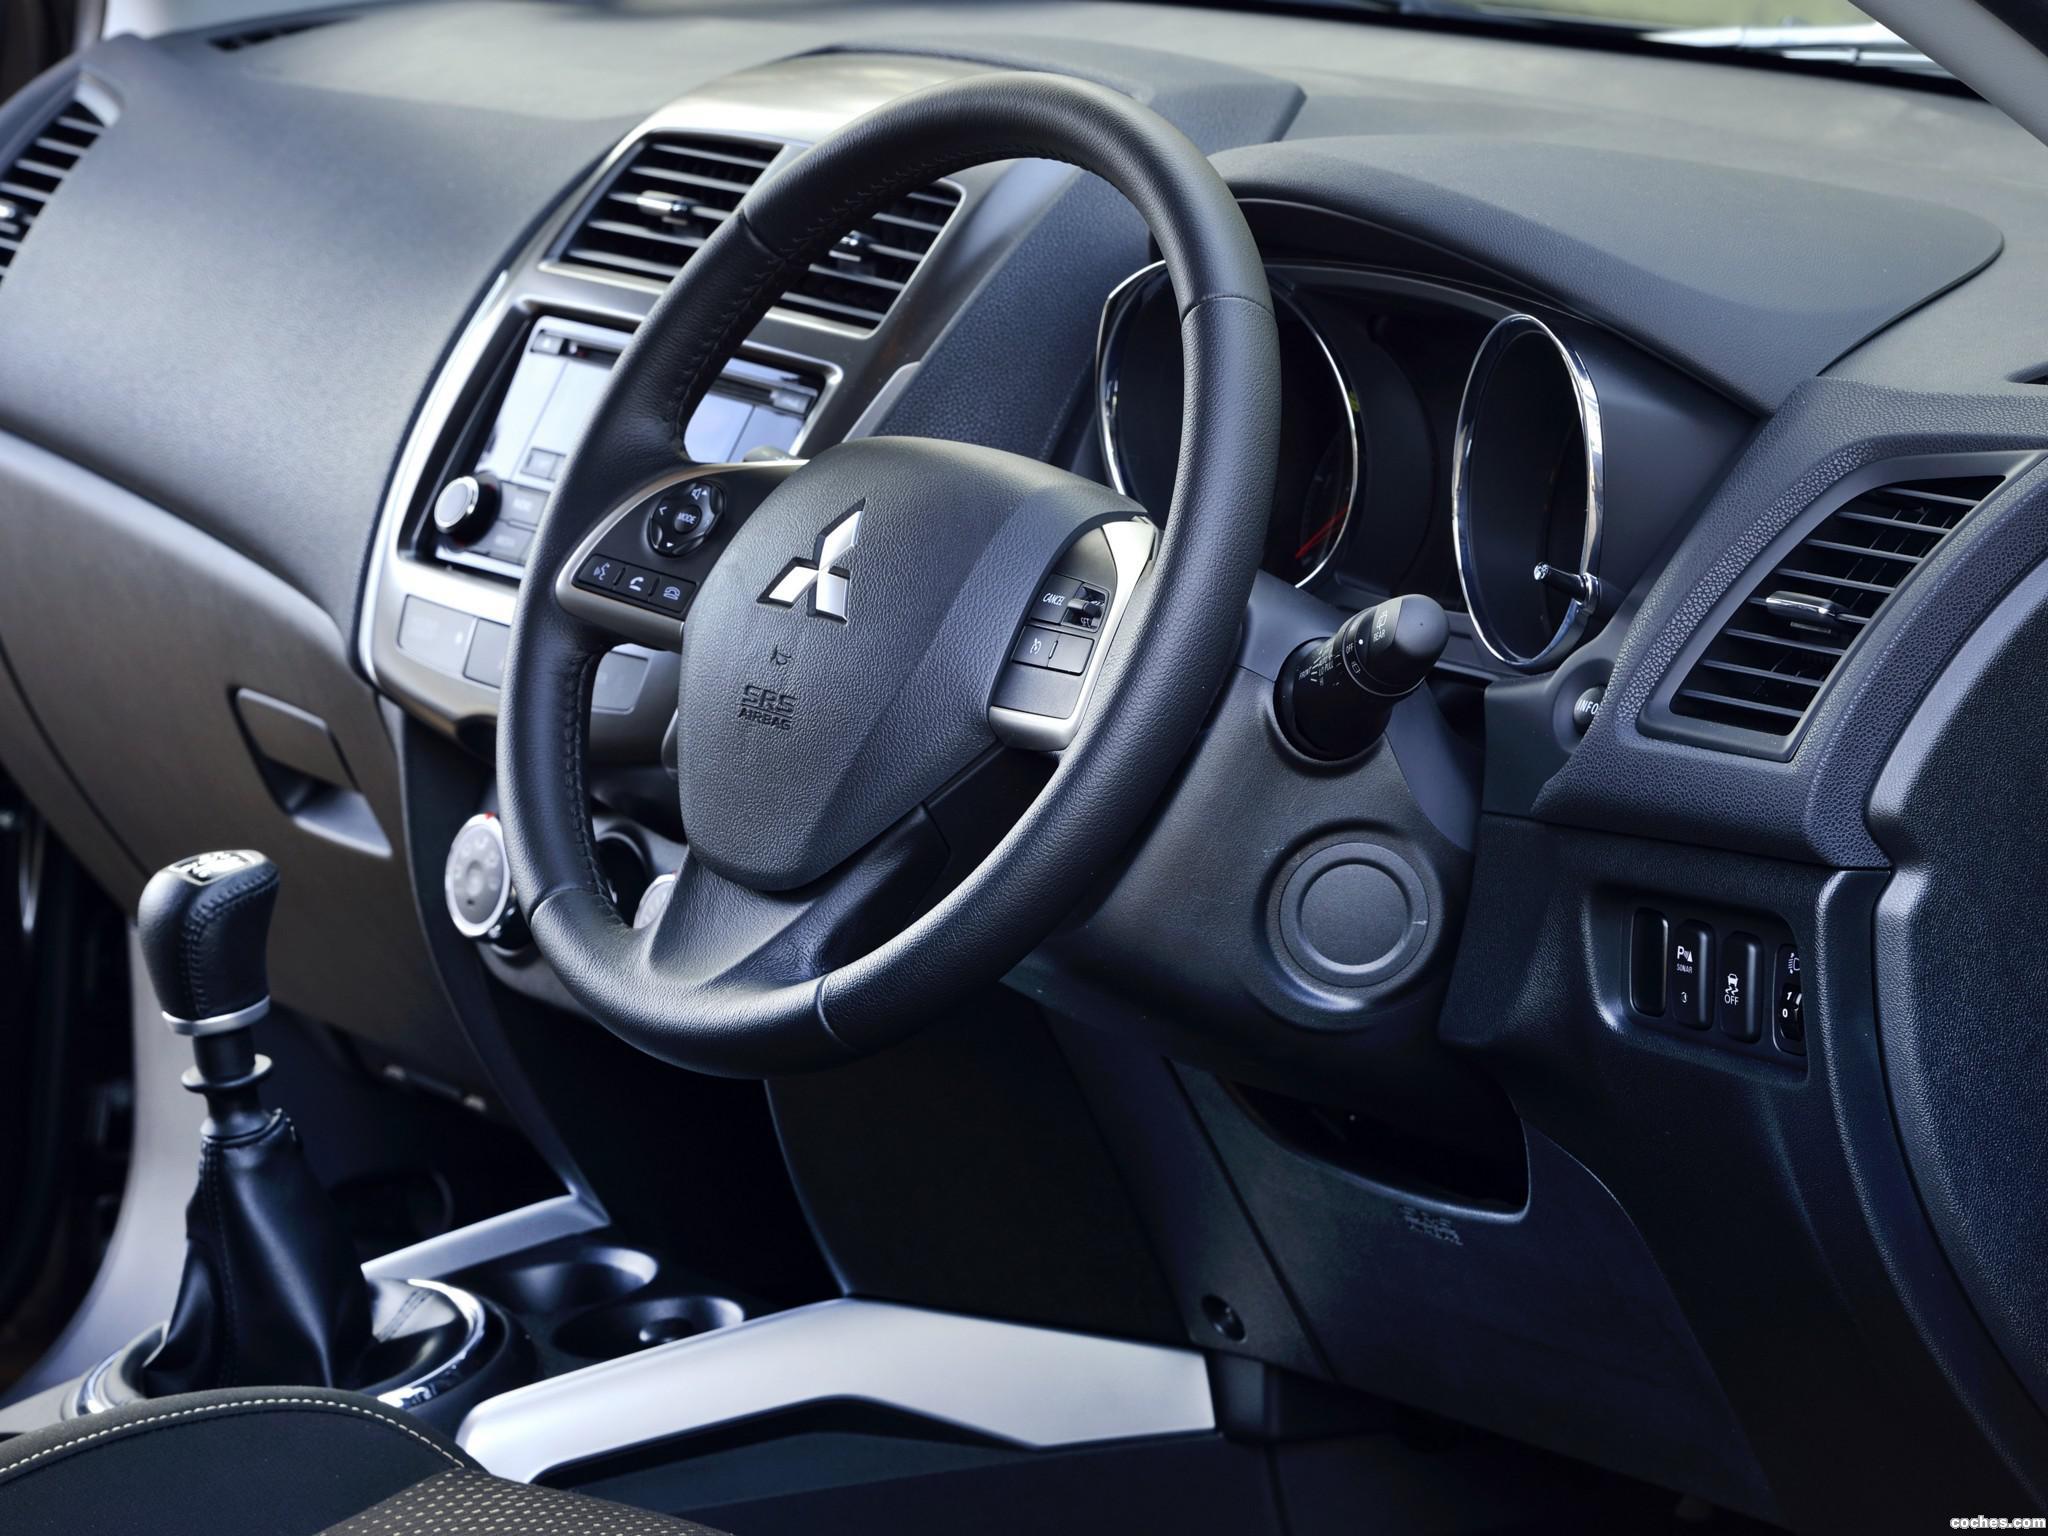 Установка кнопок управления аудиосистемой и круиз-контролем на руль  Mitsubishi ASX